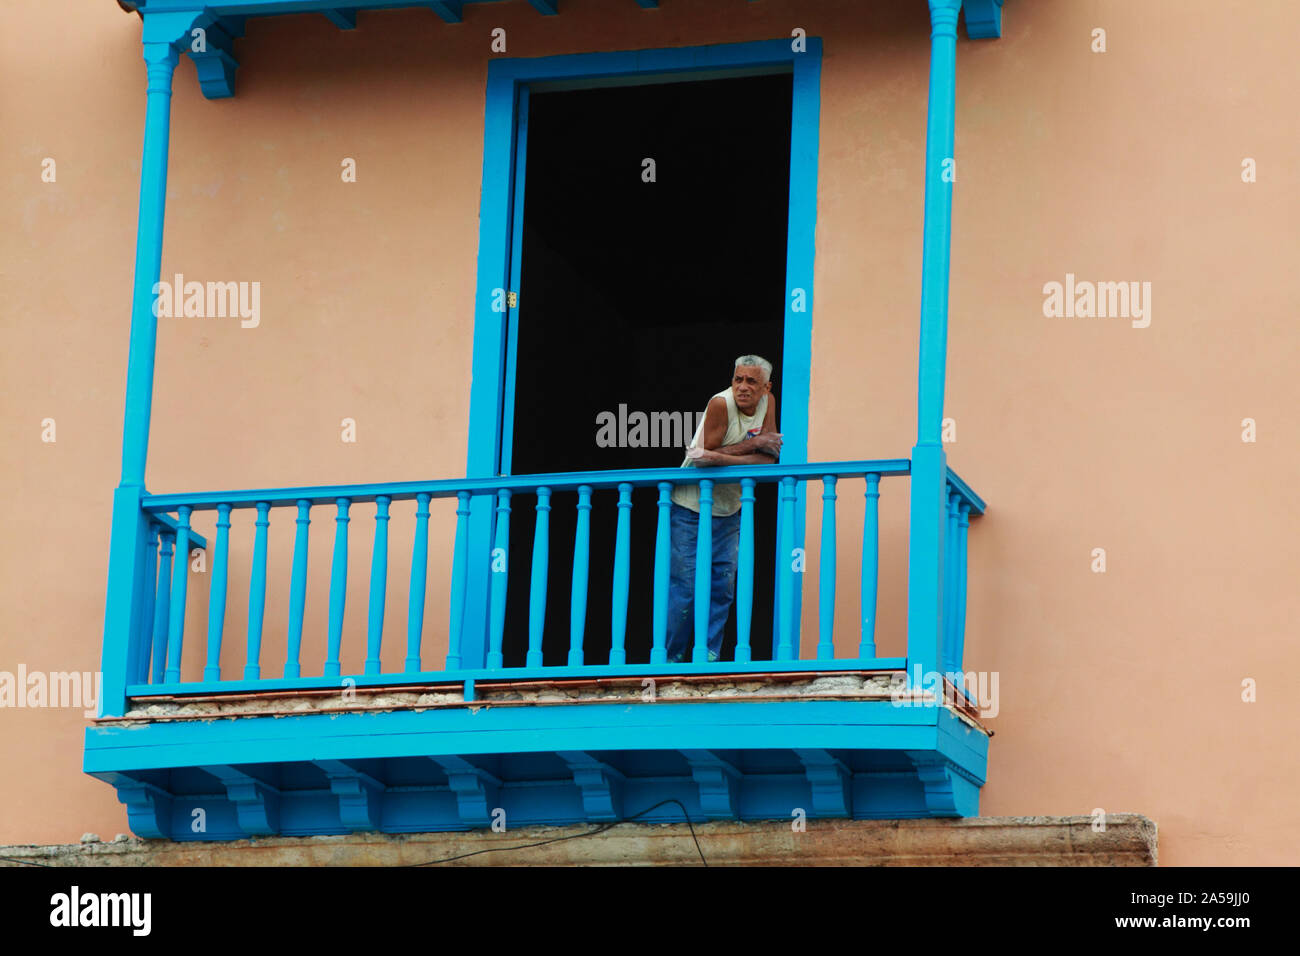 Homme cubain appuyé contre sa balustrade balcon bleu et l'affichage de la vie de la rue ci-dessous. Banque D'Images